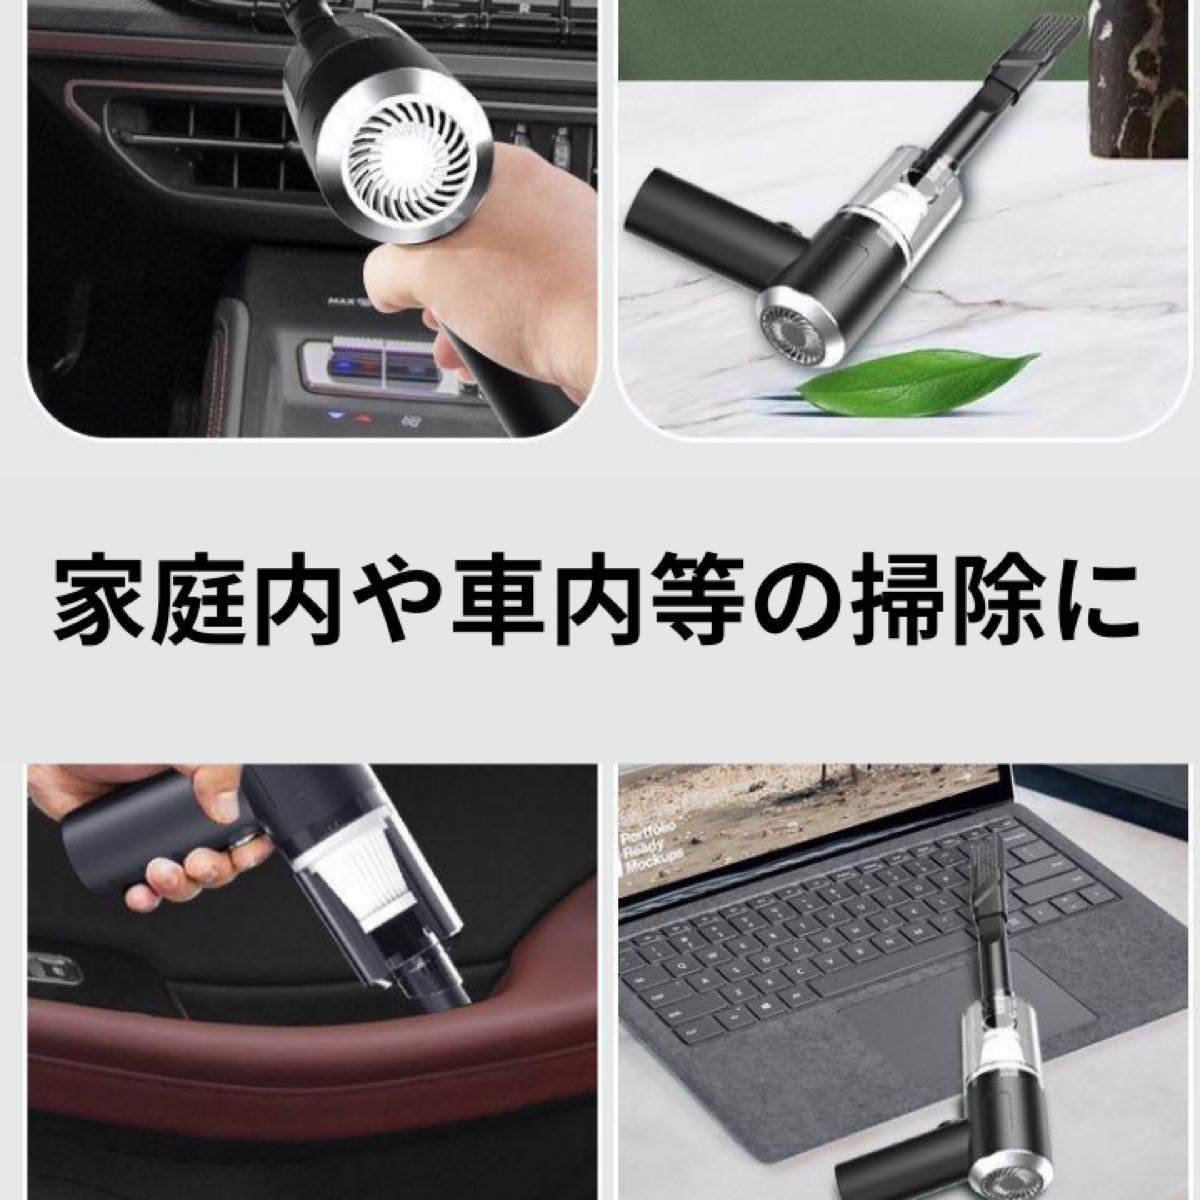 ハンディクリーナー コードレス 多機能ミニ掃除機 車用 車用掃除機 カークリーナーパワフル USB充電式 カークリーナー 掃除機